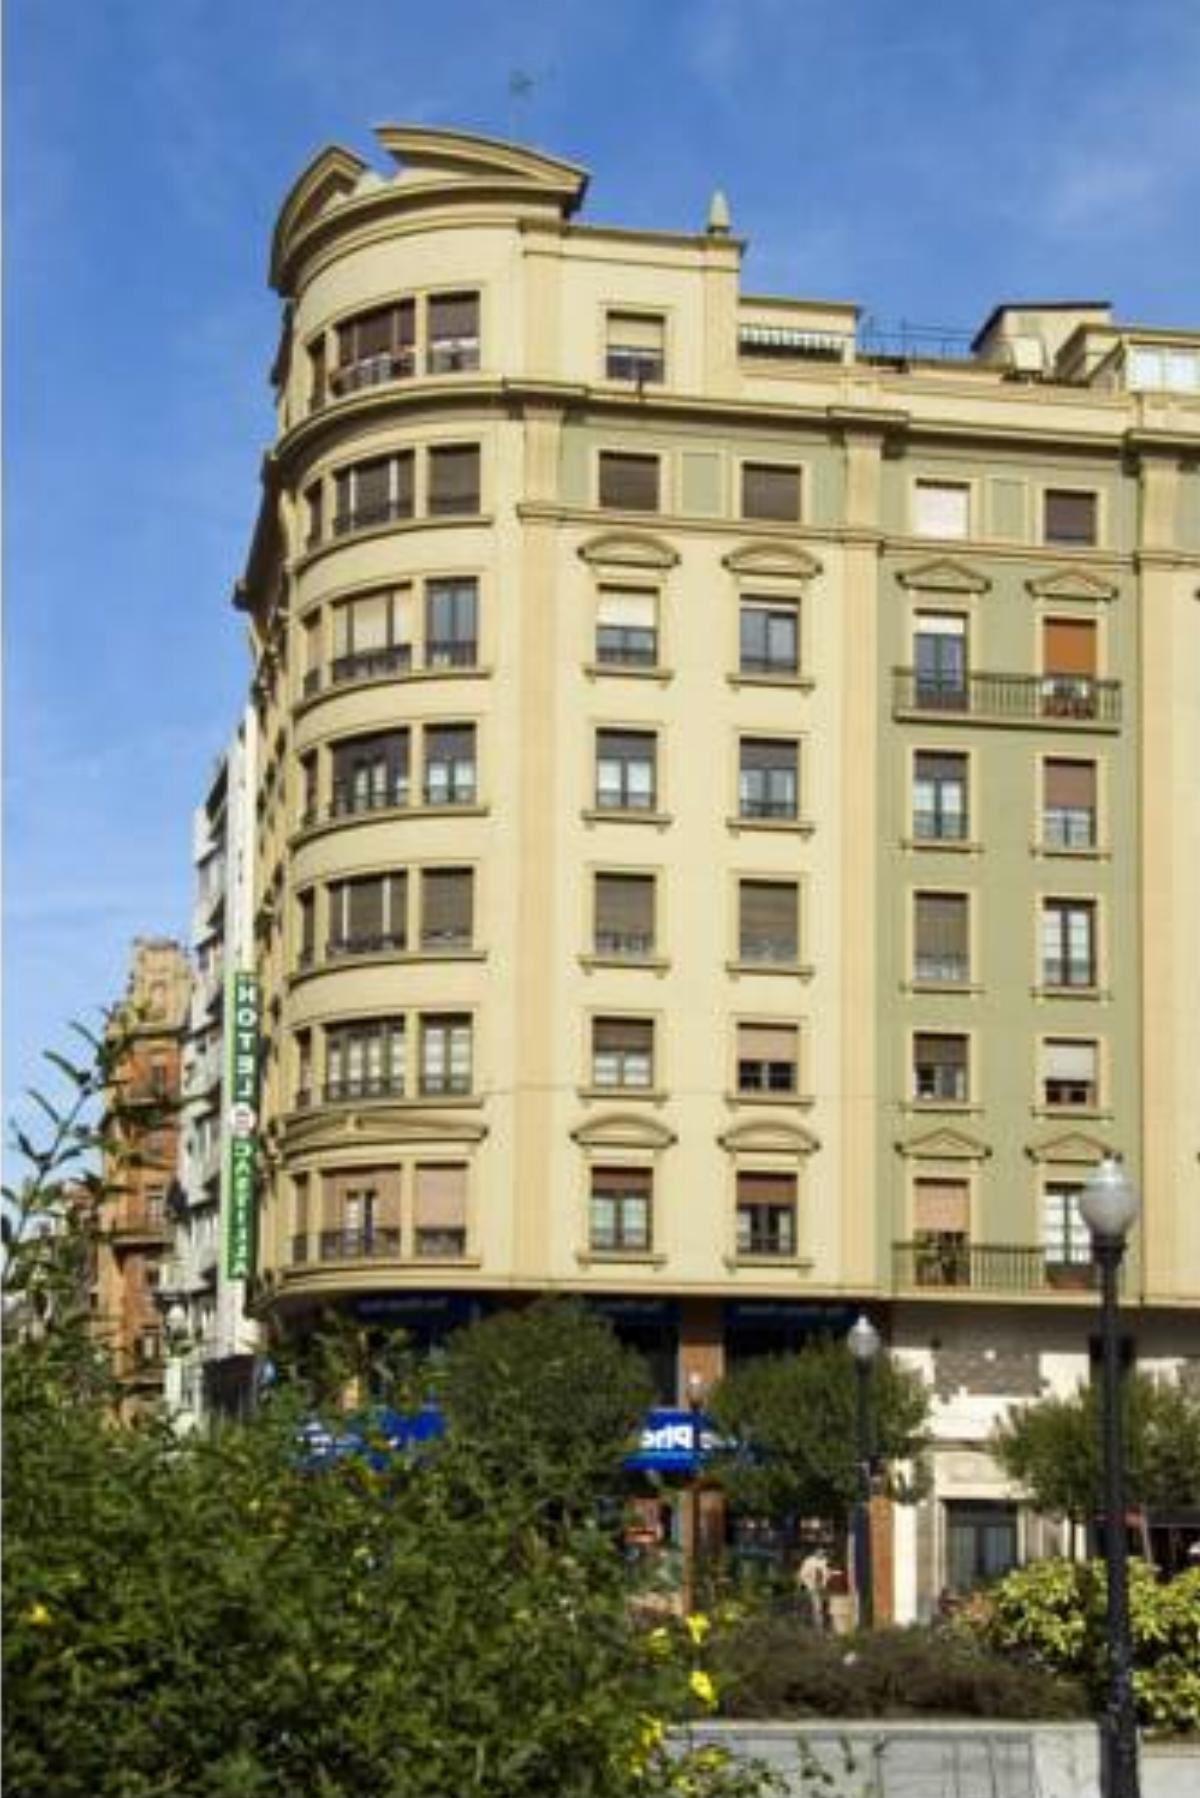 Hotel Castilla Hotel Gijón Spain